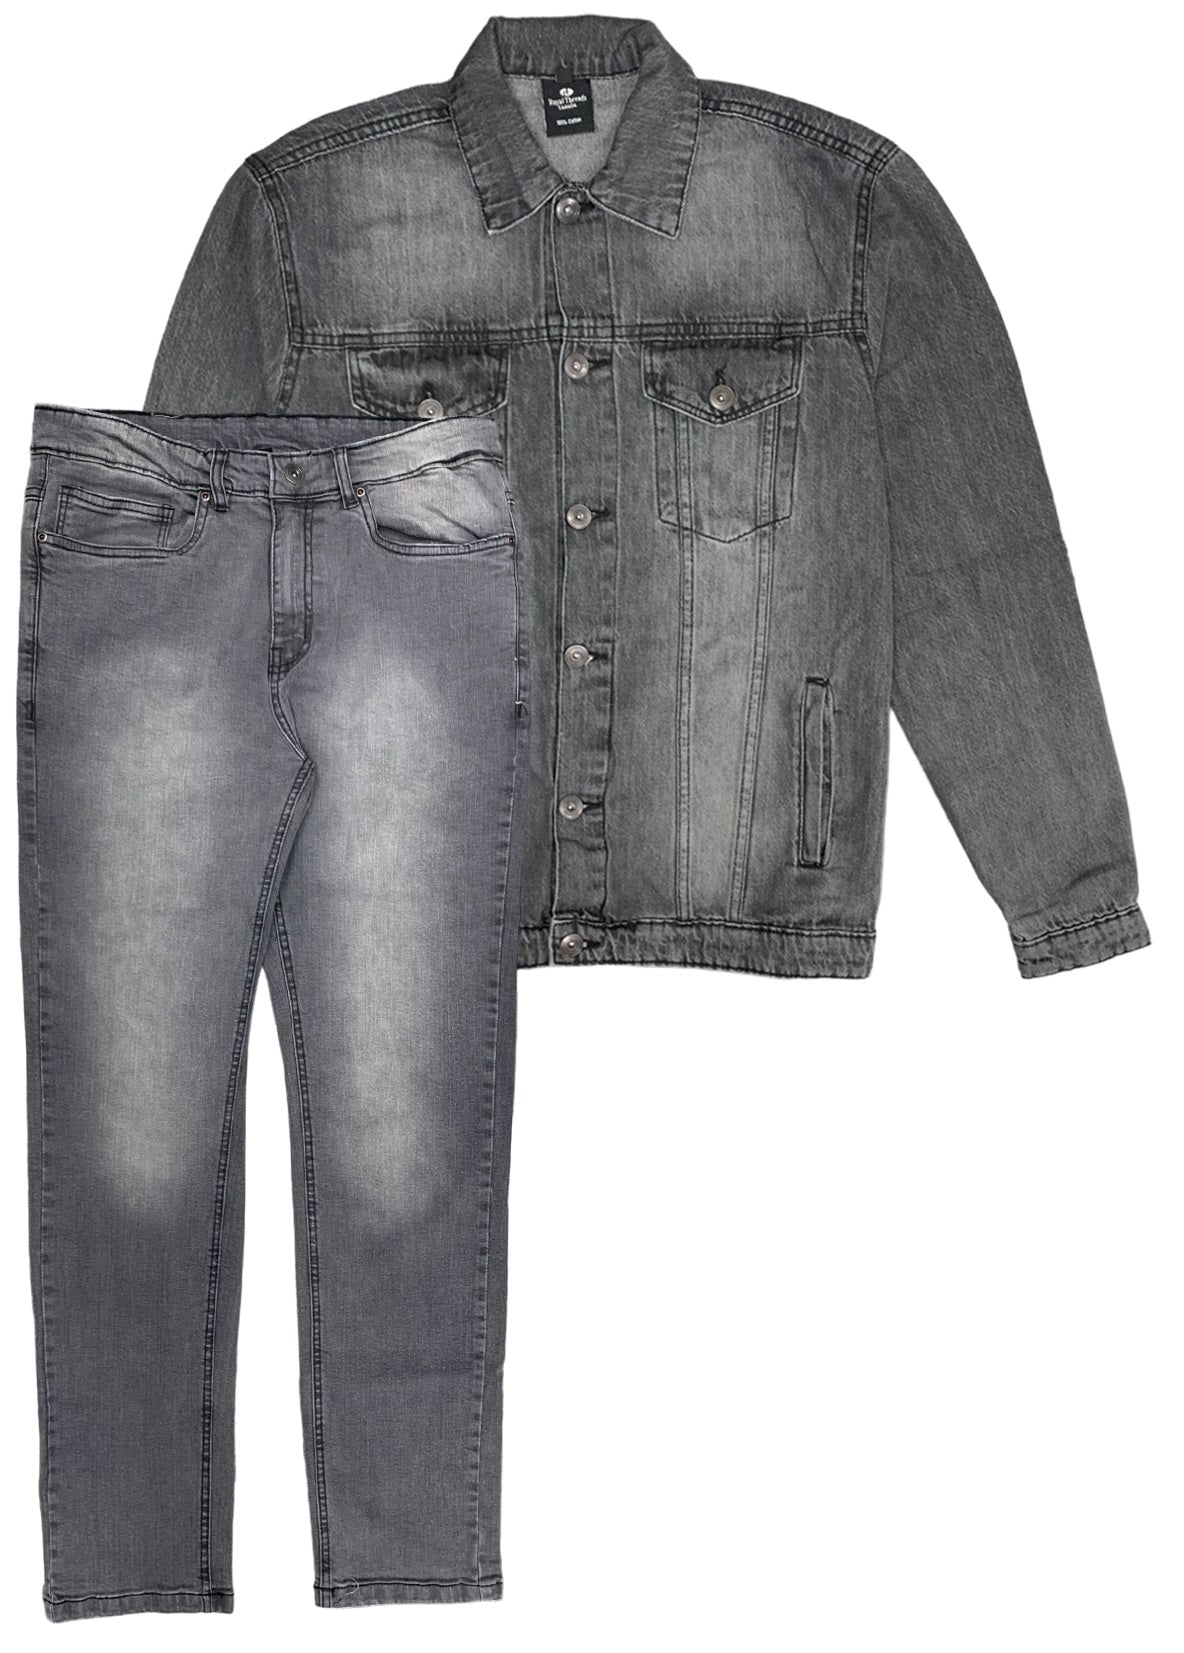 Men's Denim Classic Jean Suit 2-Piece Outfit Jacket & Pants